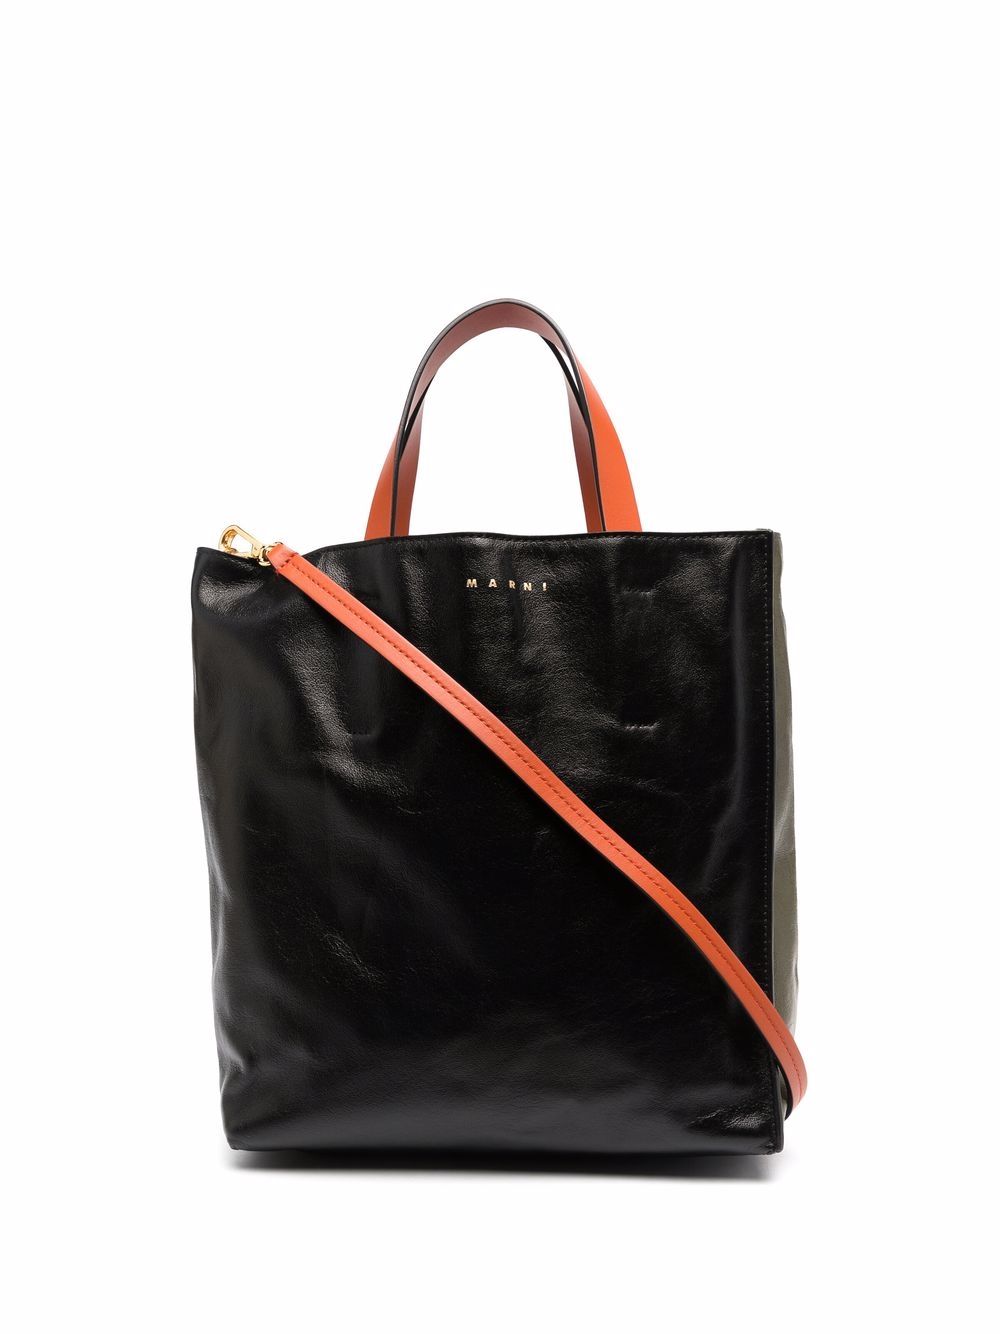 Marni colourblock leather tote bag - Black von Marni